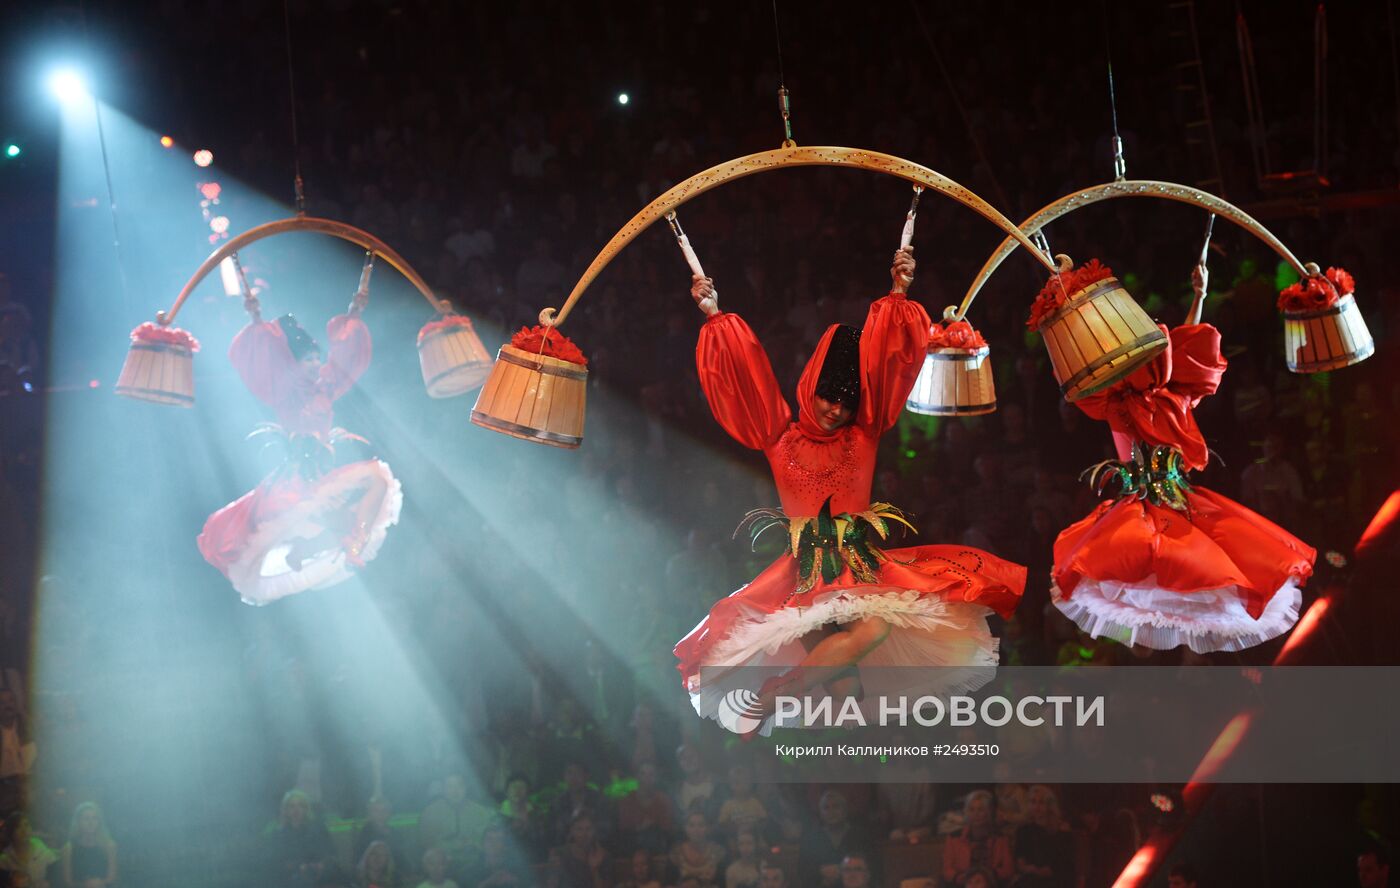 Всемирный фестиваль циркового искусства "Идол-2014". Гала-шоу